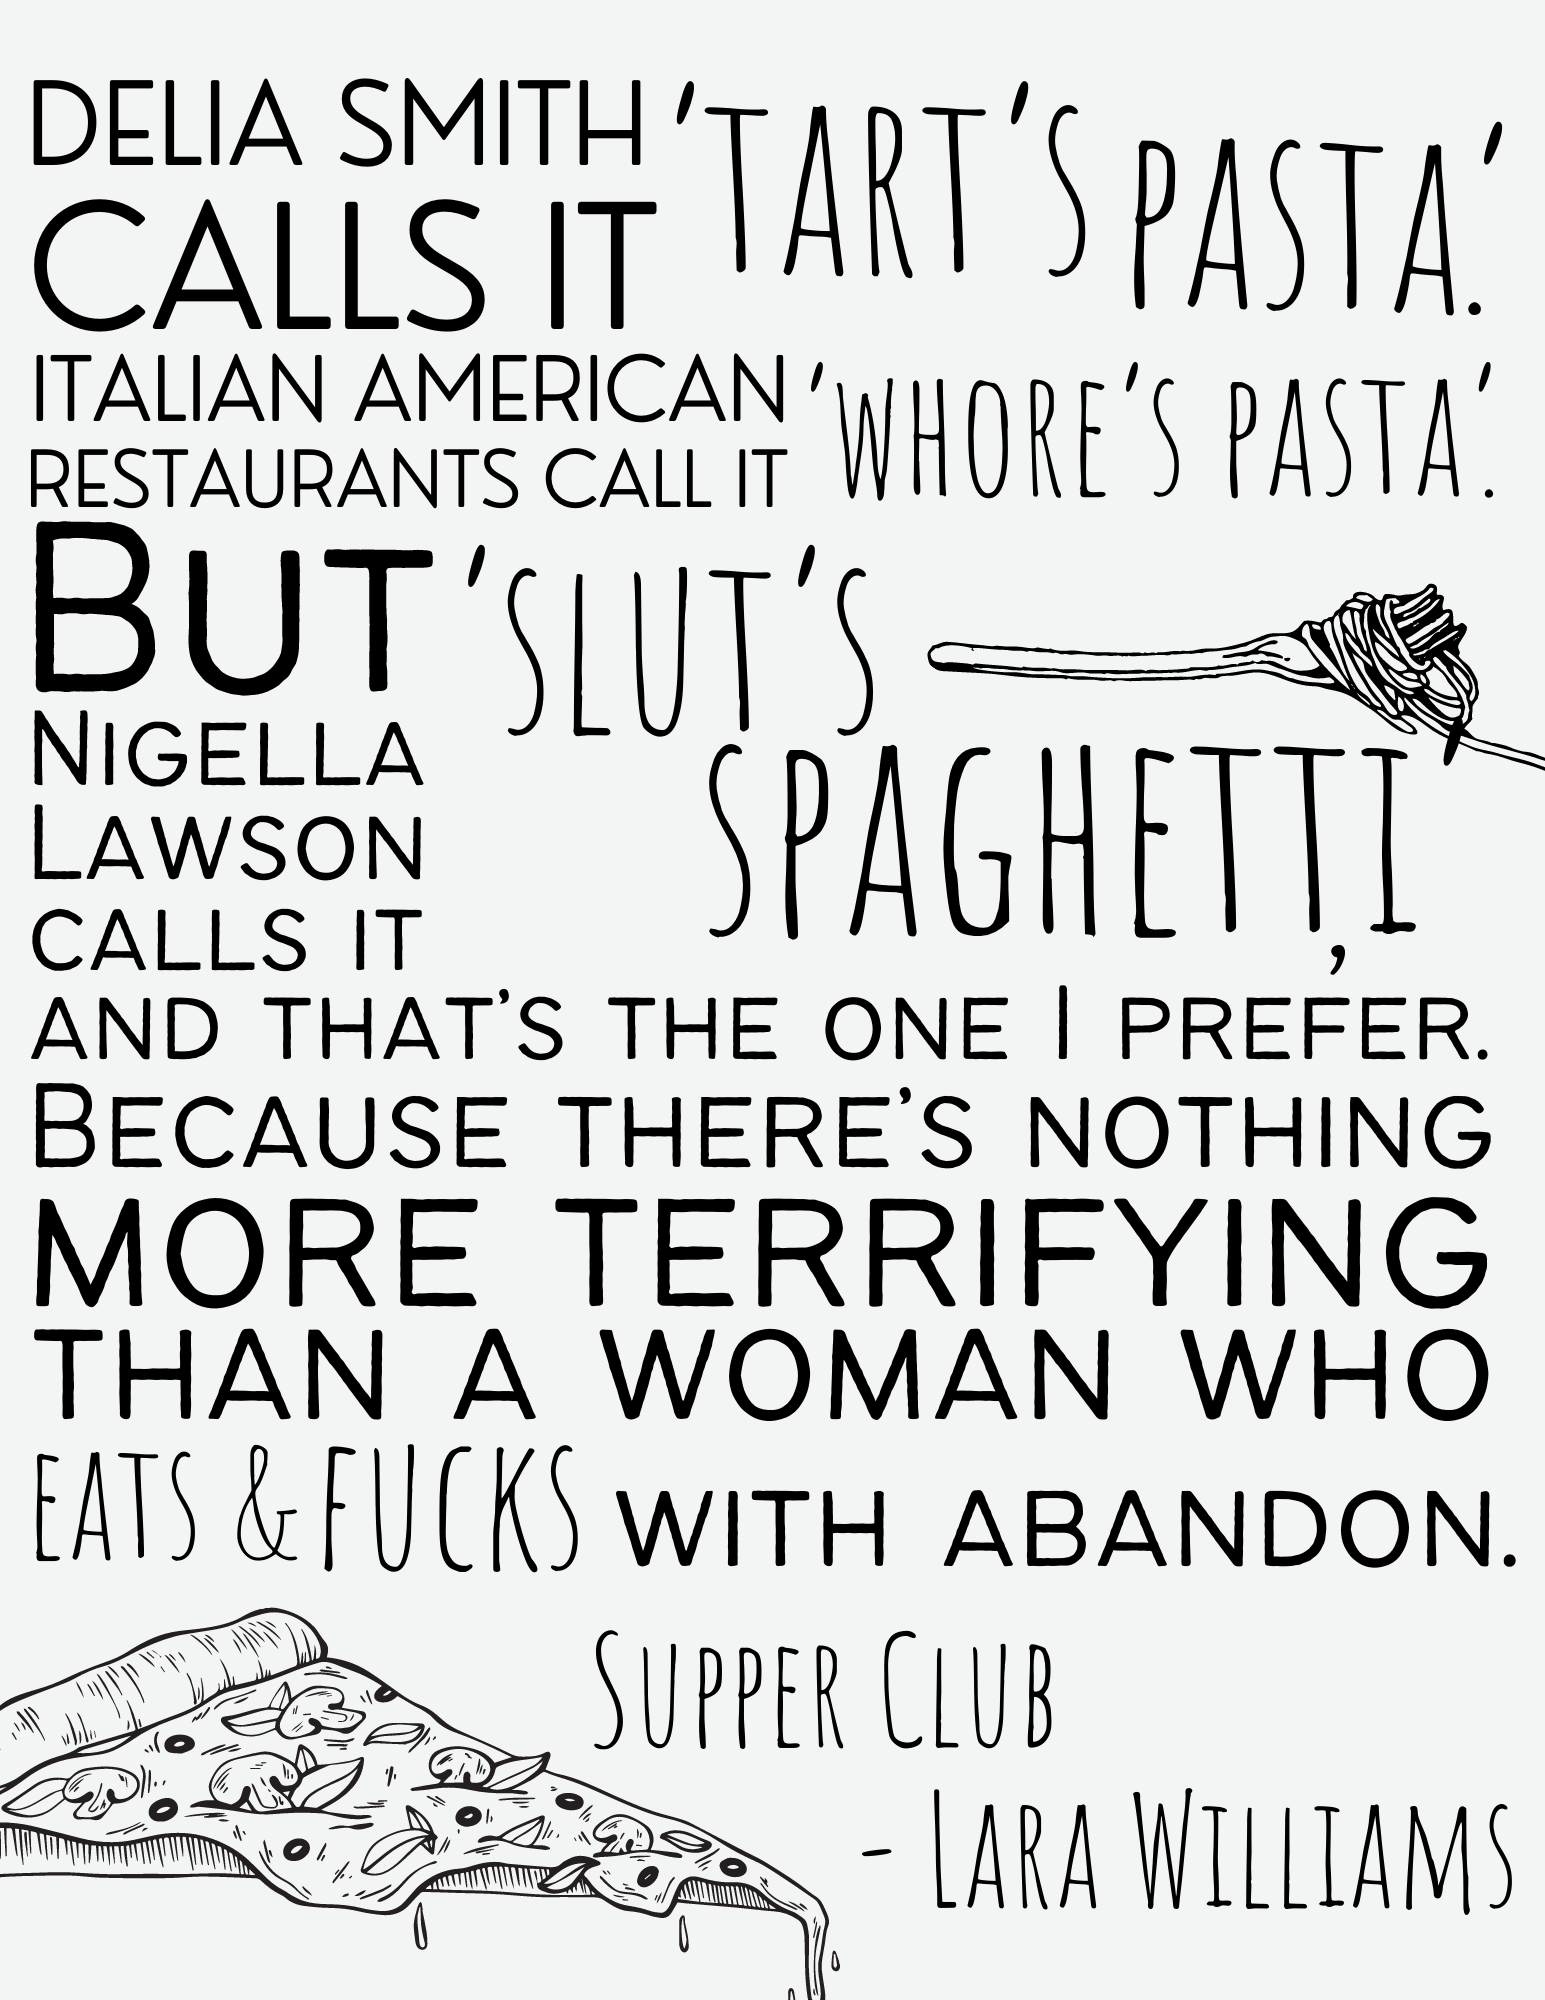 Supper club by laura williamas quote - Delia Smith calls it 'Tart's pasta', Italian American restaurants call it 'whore's pasta' but Nigella Lawson calls it 'slut's spaghetti' and that's the one i prefer most. 